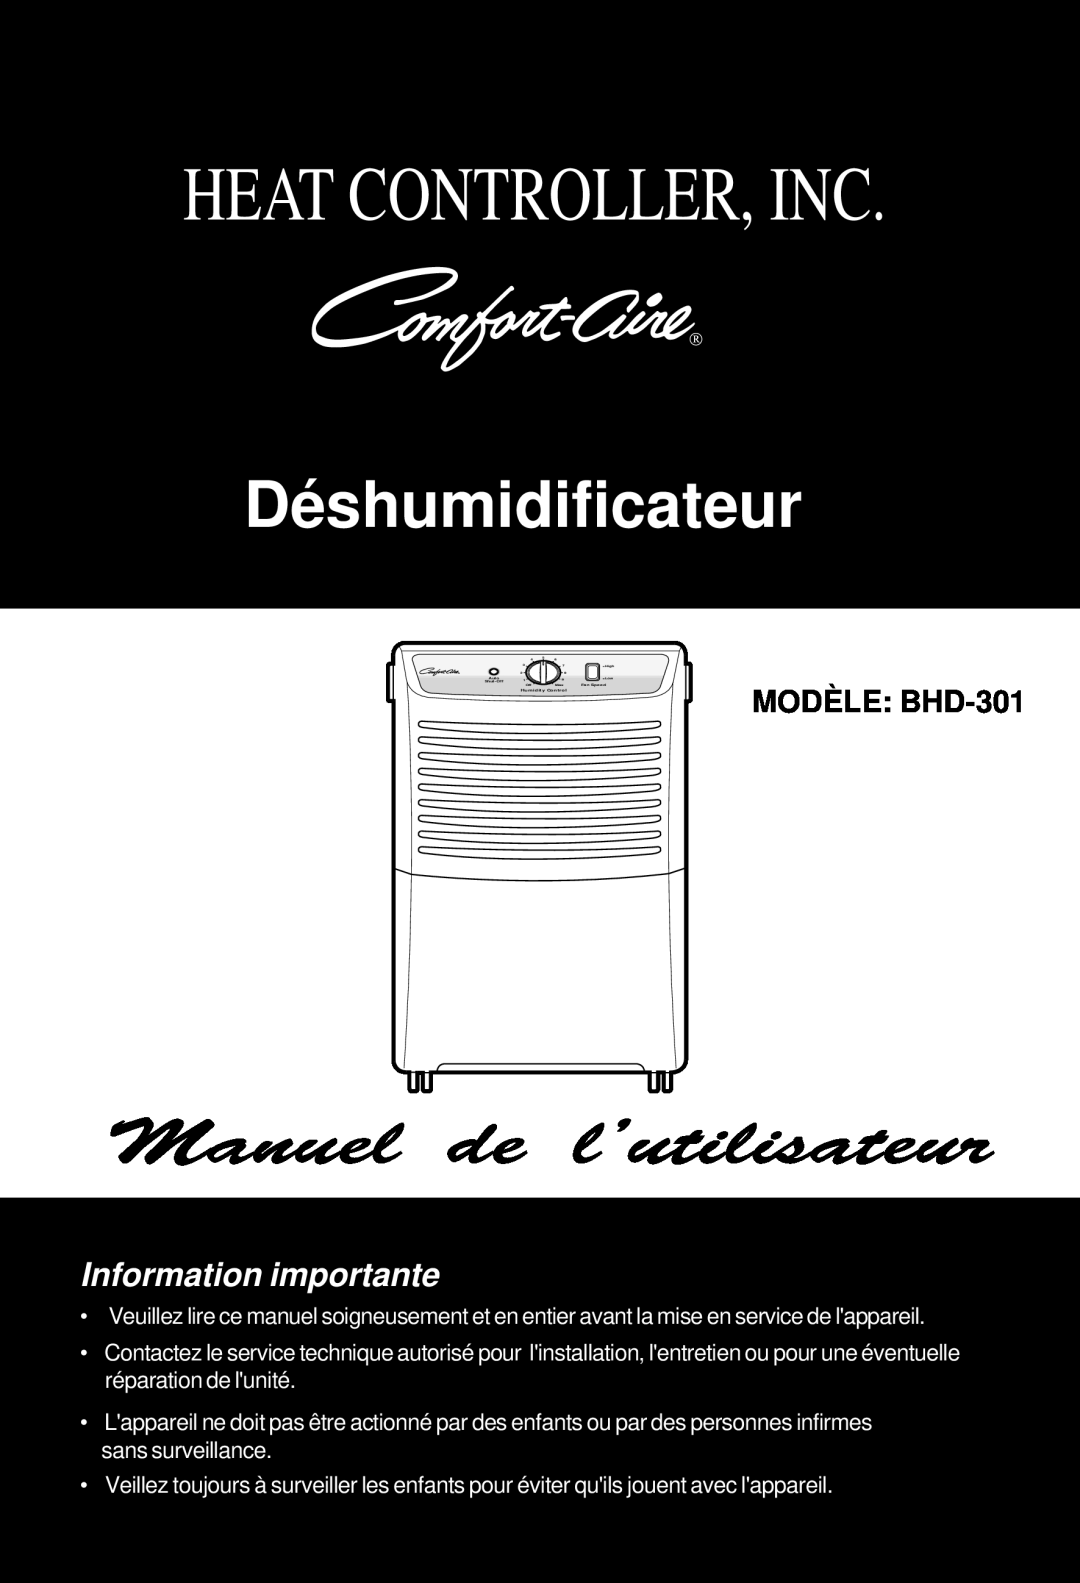 Heat Controller manual Déshumidificateur, Information importante, MODÈLE: BHD-301, Heat Controller, Inc 